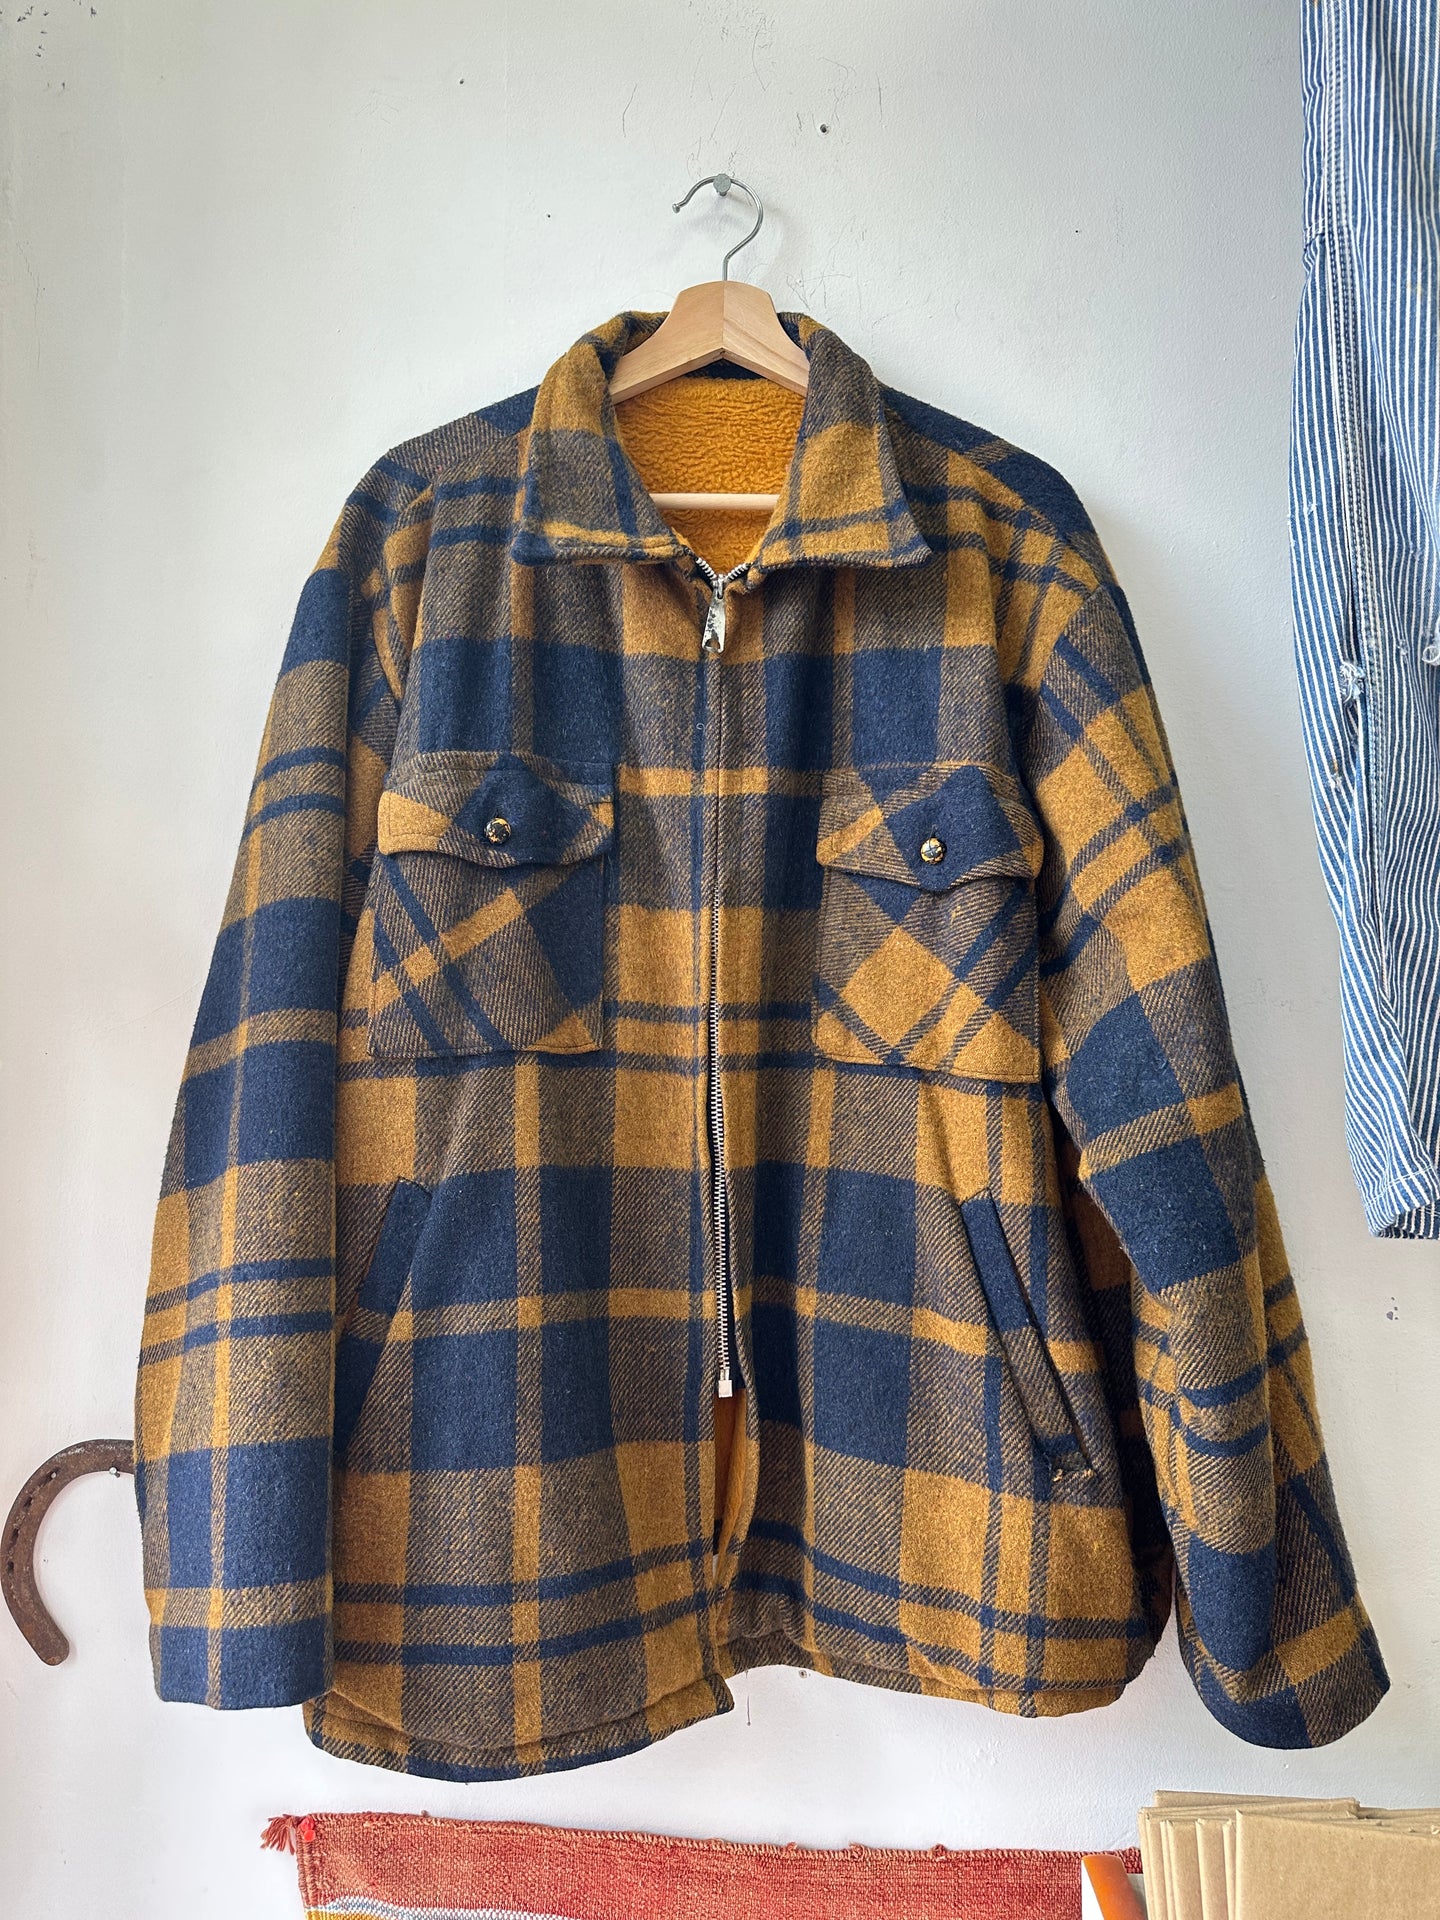 1970s Zipped Wool Jacket